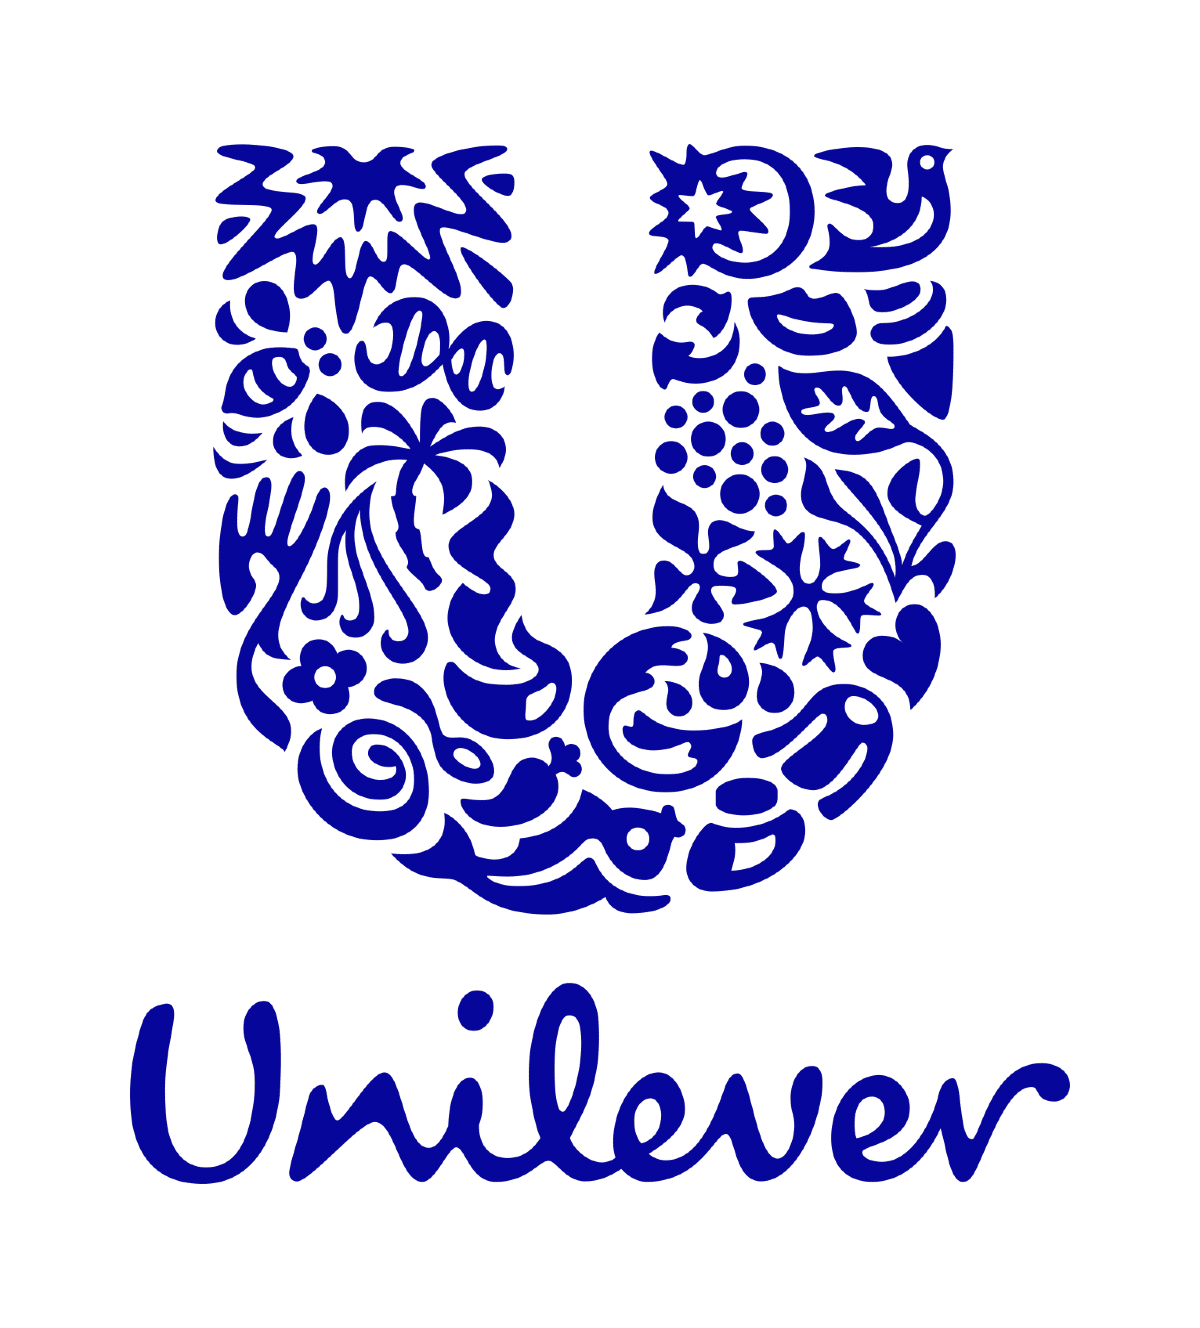 logo of unilever